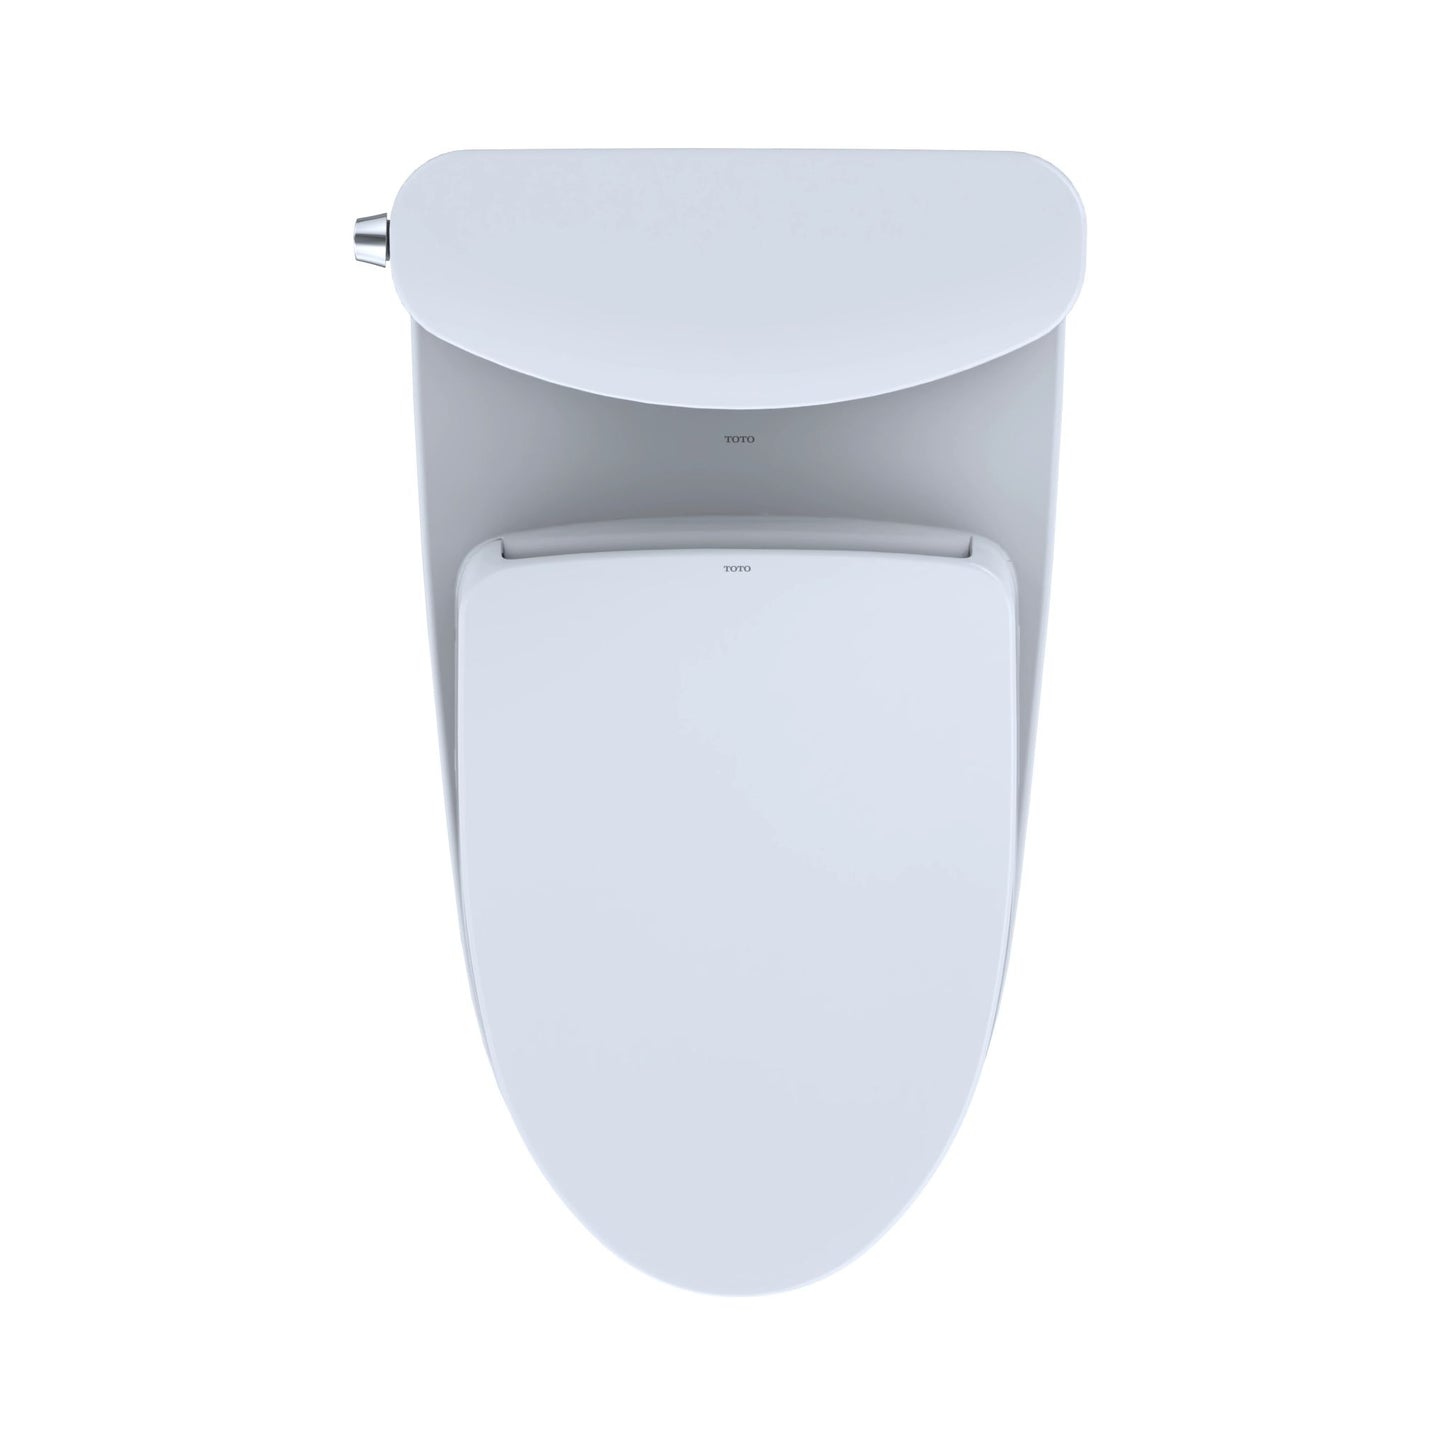 Nexus WASHLET+ S550E Auto Open / Close Two-Piece Toilet